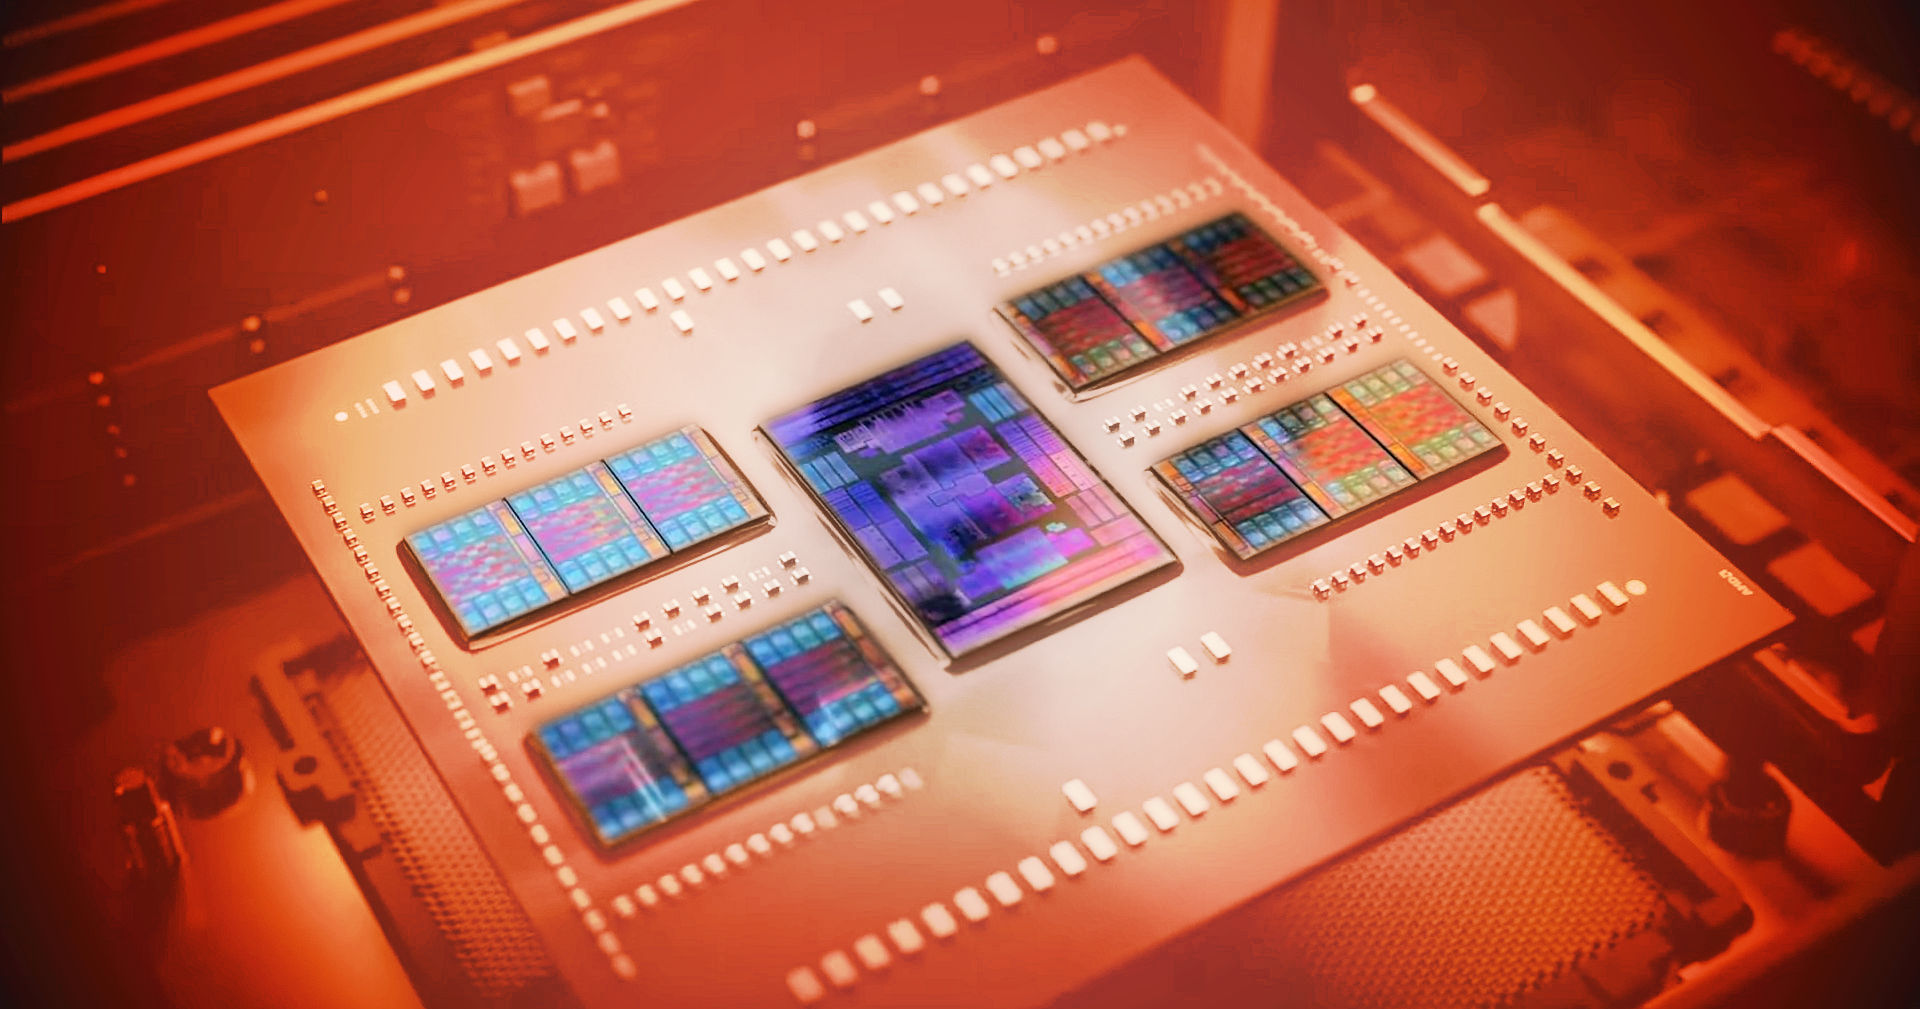 96 Cores, One Chip! First Tests: AMD's Ryzen Threadripper Pro